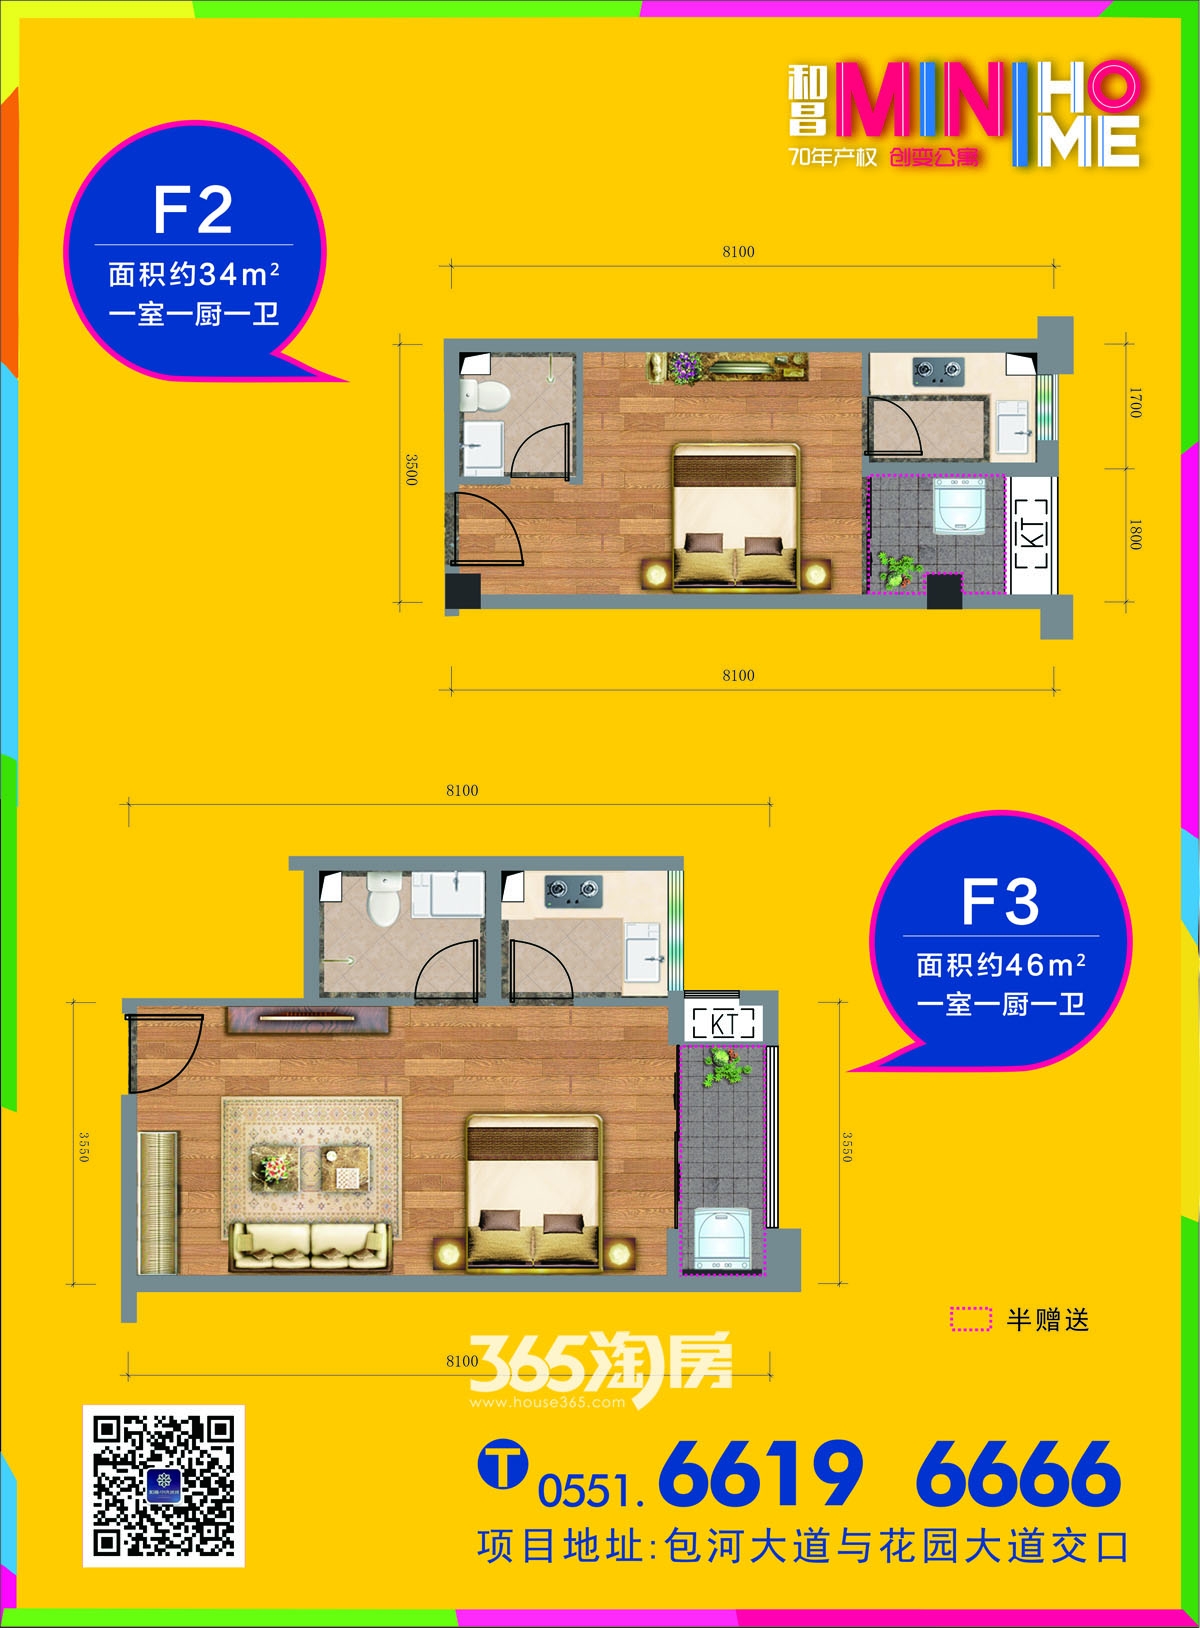 和昌mini home公寓F2、F3户型图